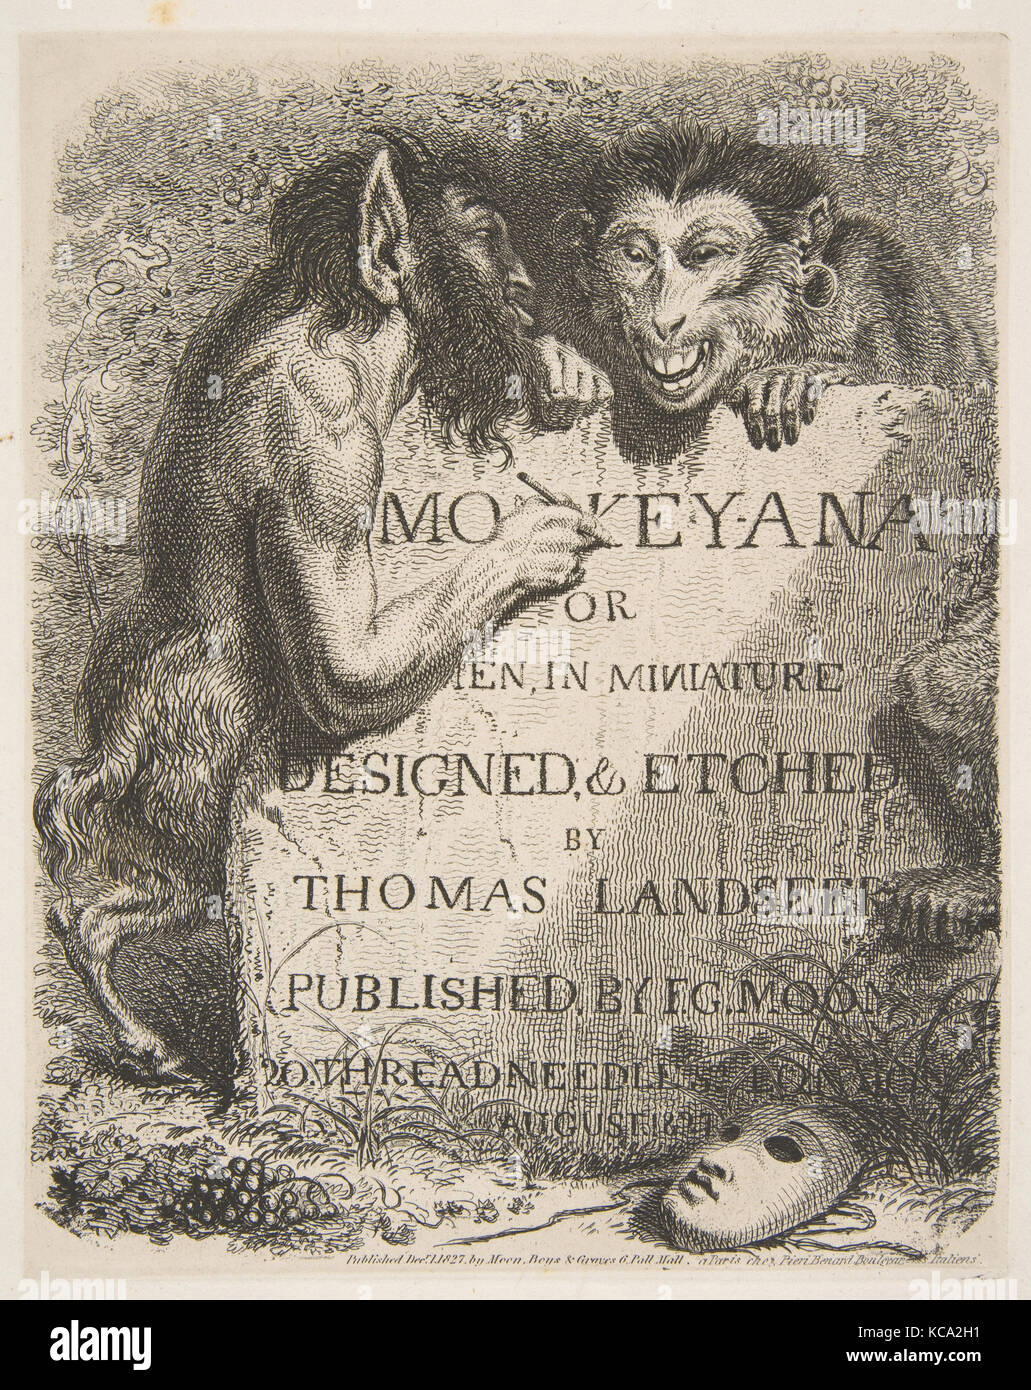 Page de titre, de Monkey-ana, ou des hommes en miniature, Thomas, 1827 Landseer Banque D'Images